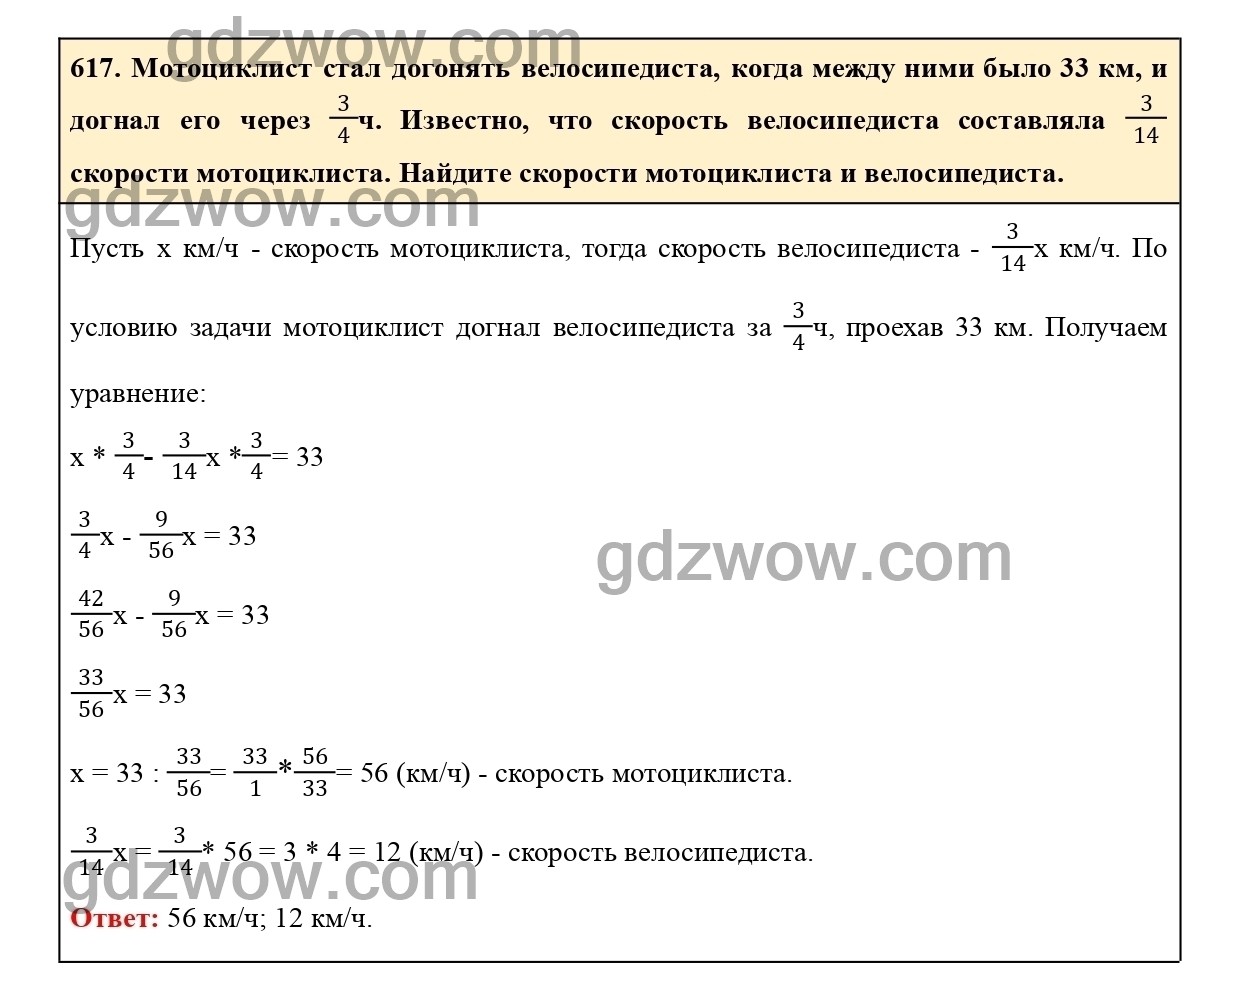 Номер 622 - ГДЗ по Математике 6 класс Учебник Виленкин, Жохов, Чесноков, Шварцбурд 2020. Часть 1 (решебник) - GDZwow